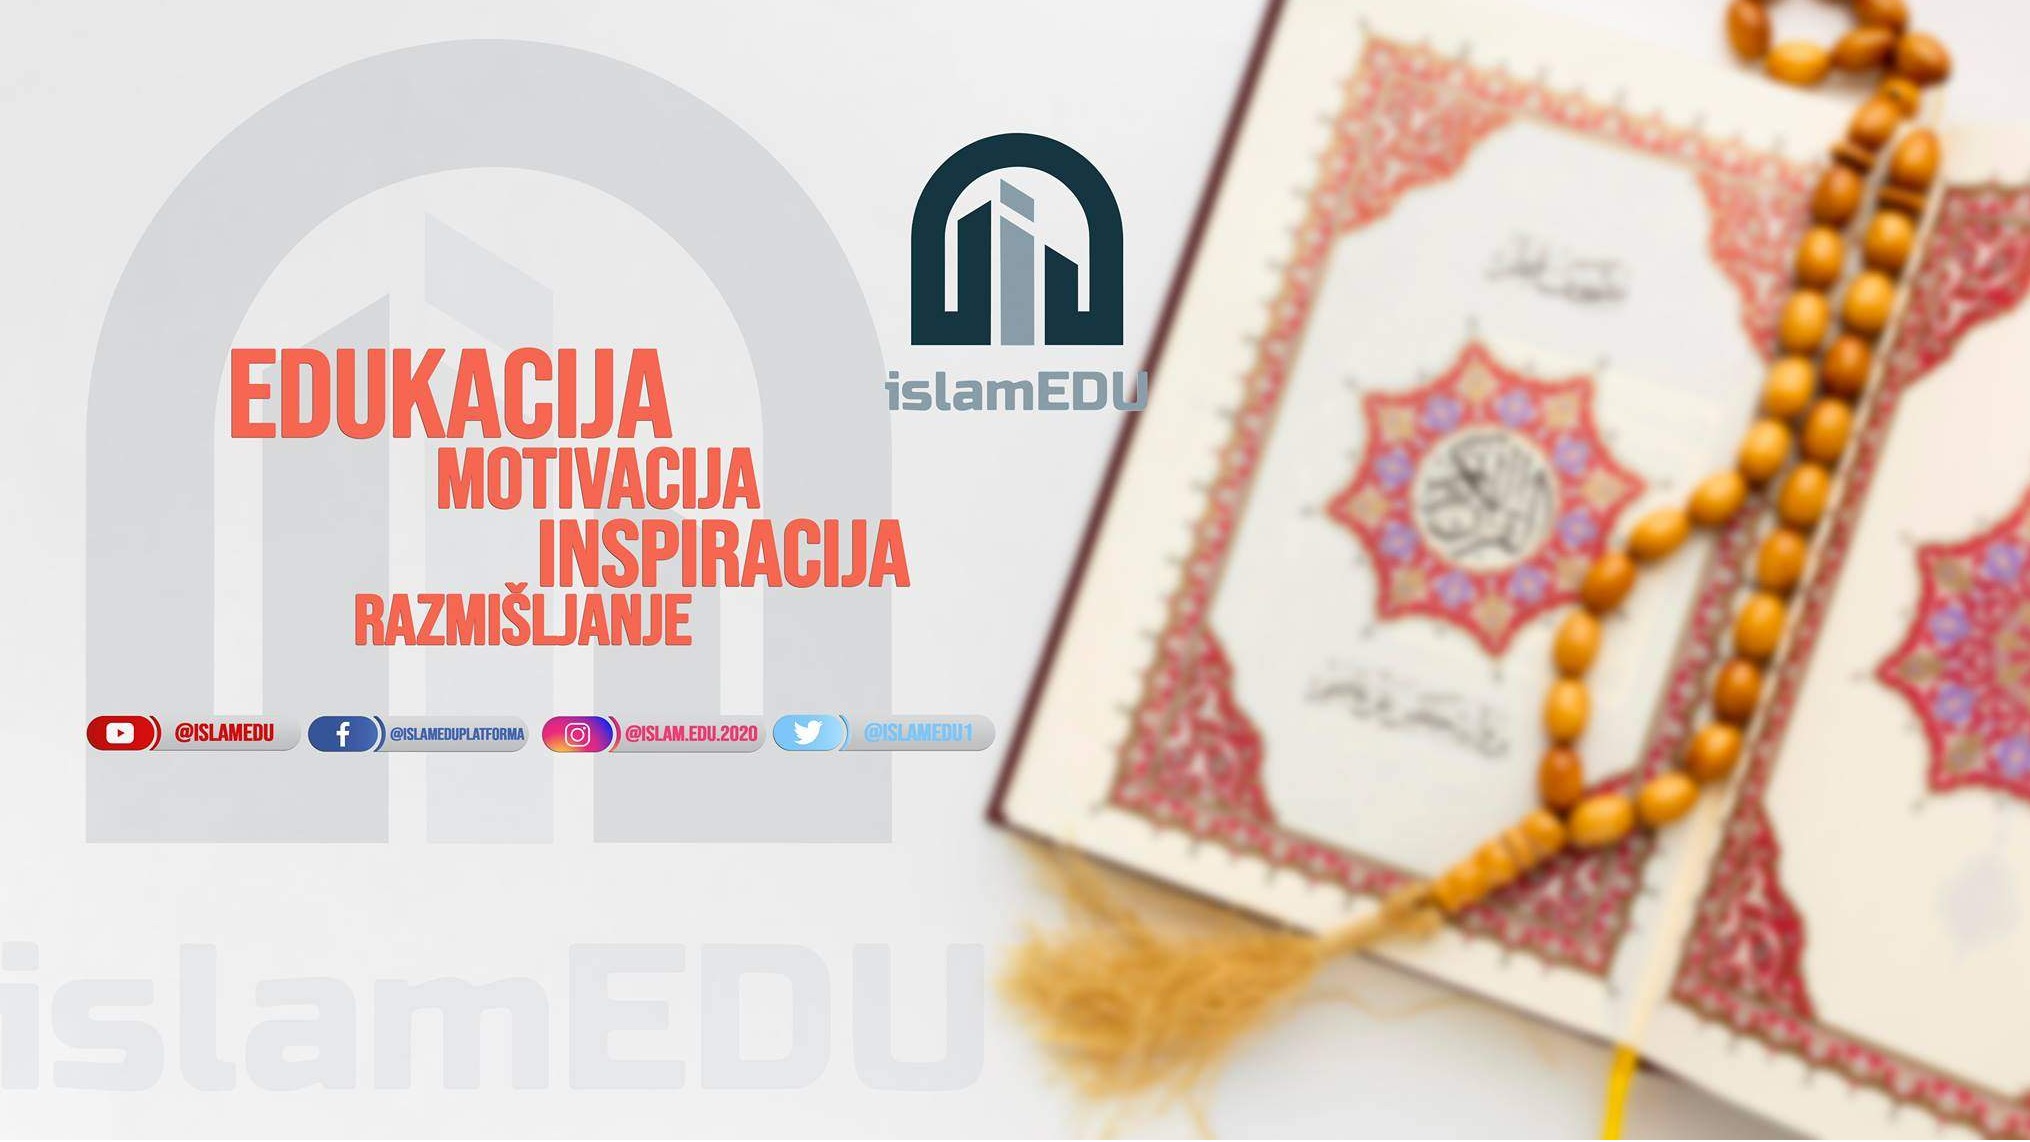 IslamEDU - Inovativan odgovor imama na pitanja duhovnosti u digitalno doba